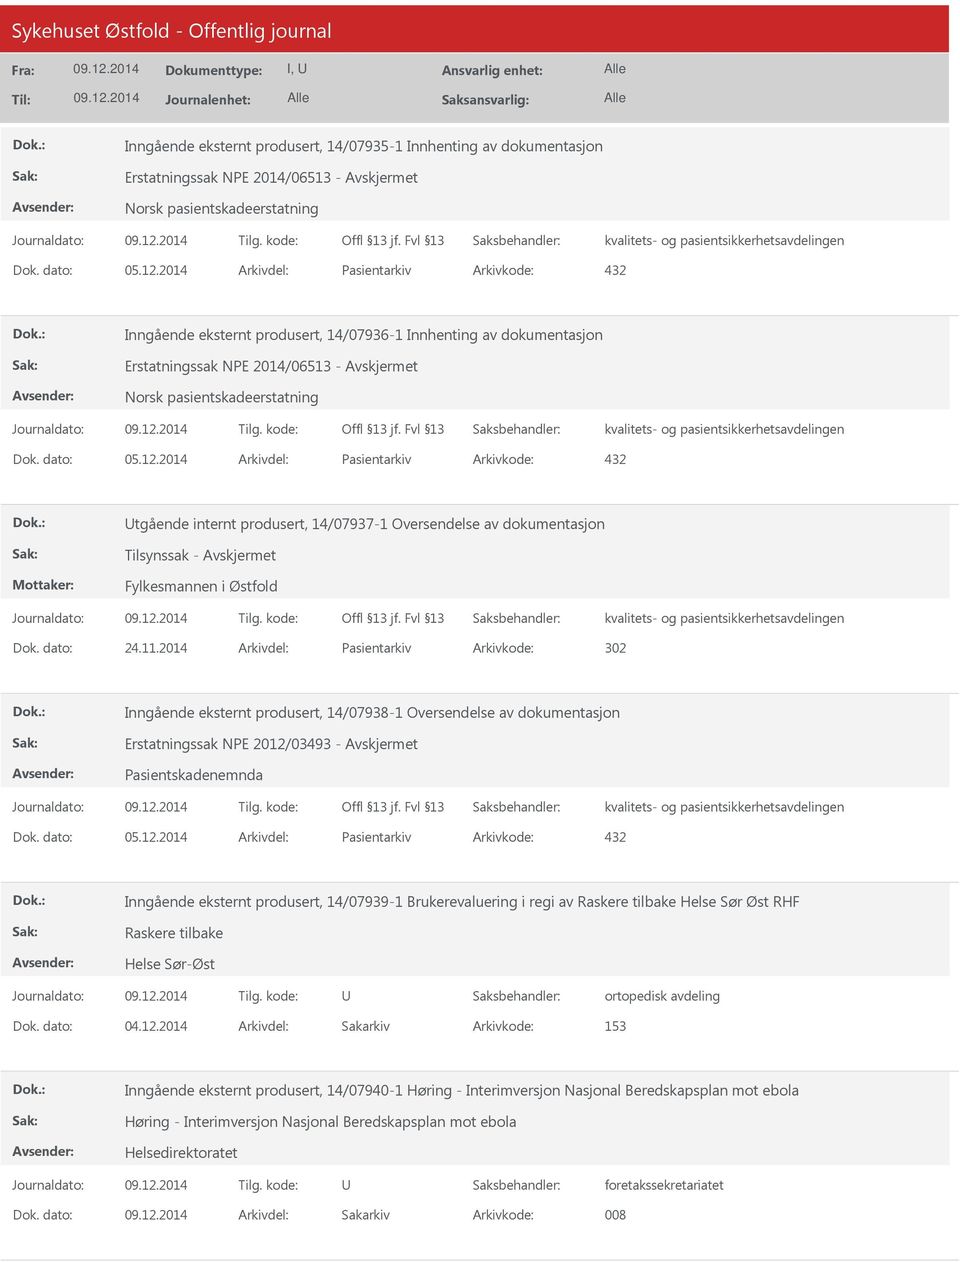 2014 Arkivdel: Pasientarkiv Arkivkode: 432 tgående internt produsert, 14/07937-1 Oversendelse av dokumentasjon Tilsynssak - Fylkesmannen i Østfold Dok. dato: 24.11.